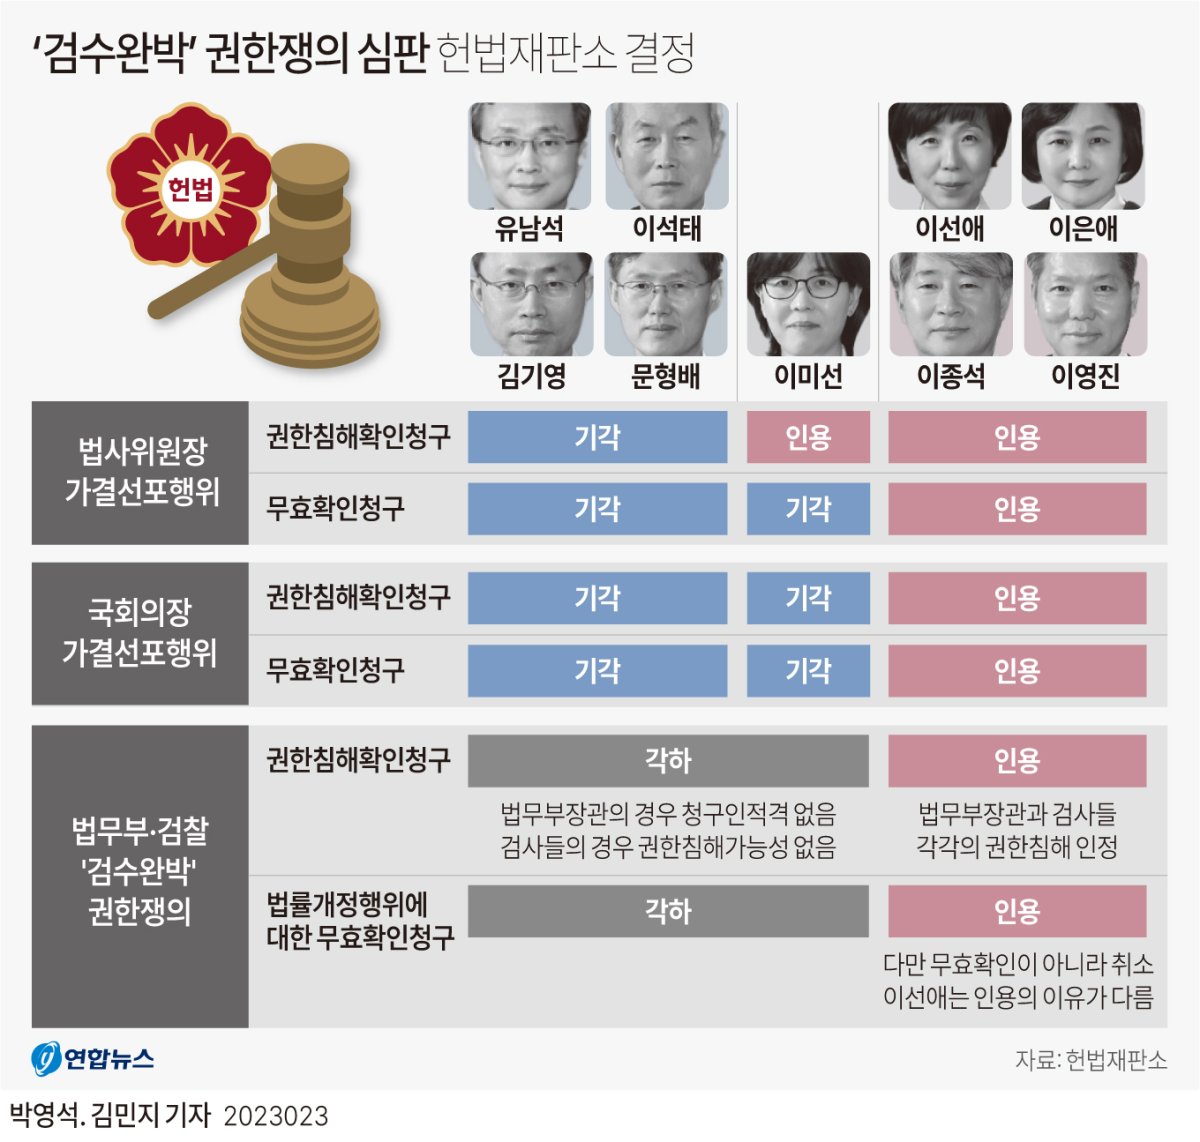  '검수완박' 권한쟁의 심판 헌법재판소 결정